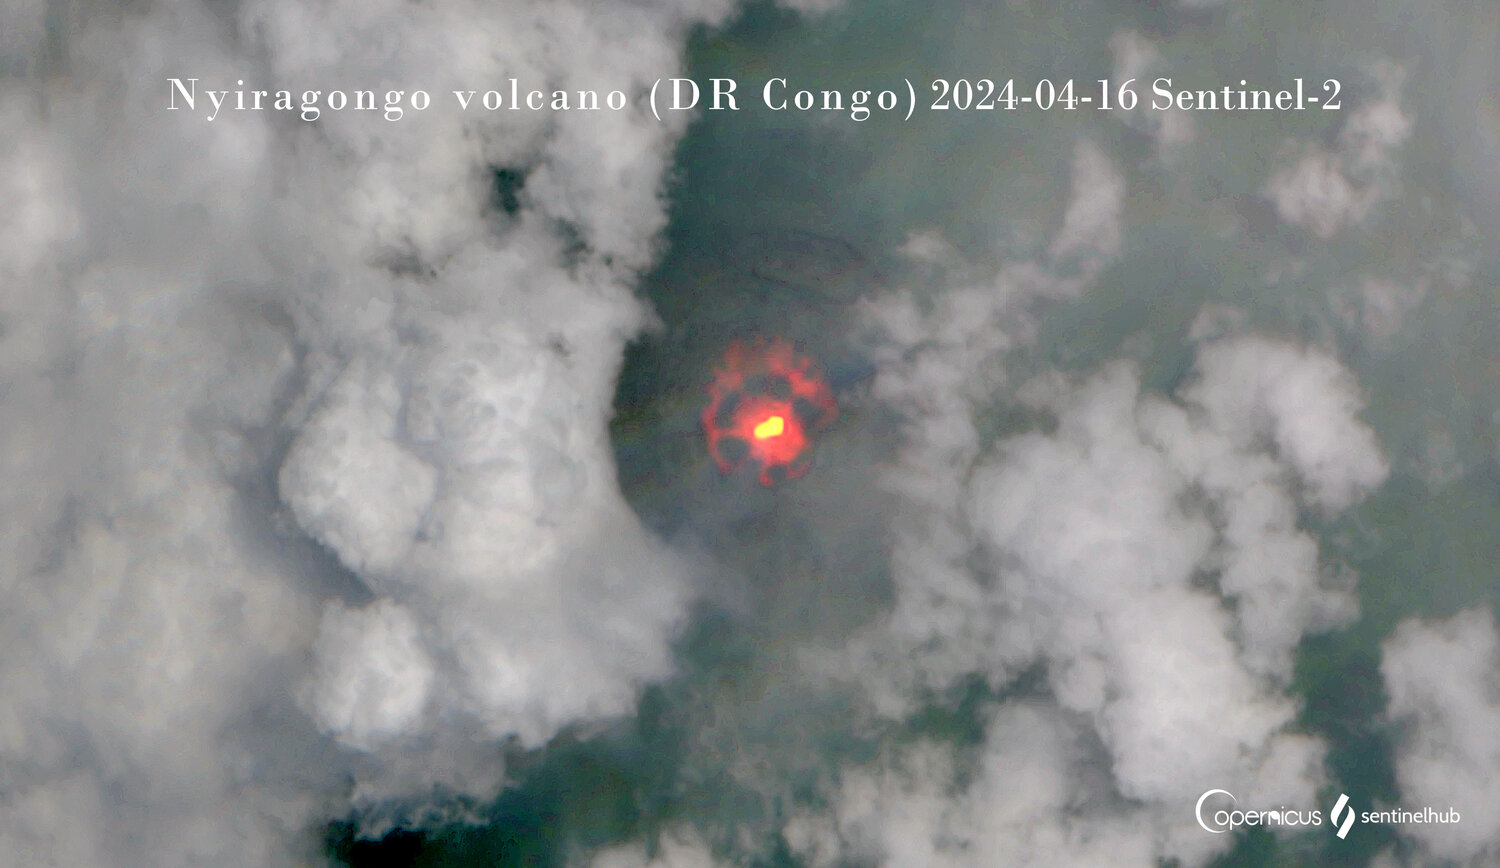 A new lava lake at Nyiragongo volcano (image: Sentinel-2)